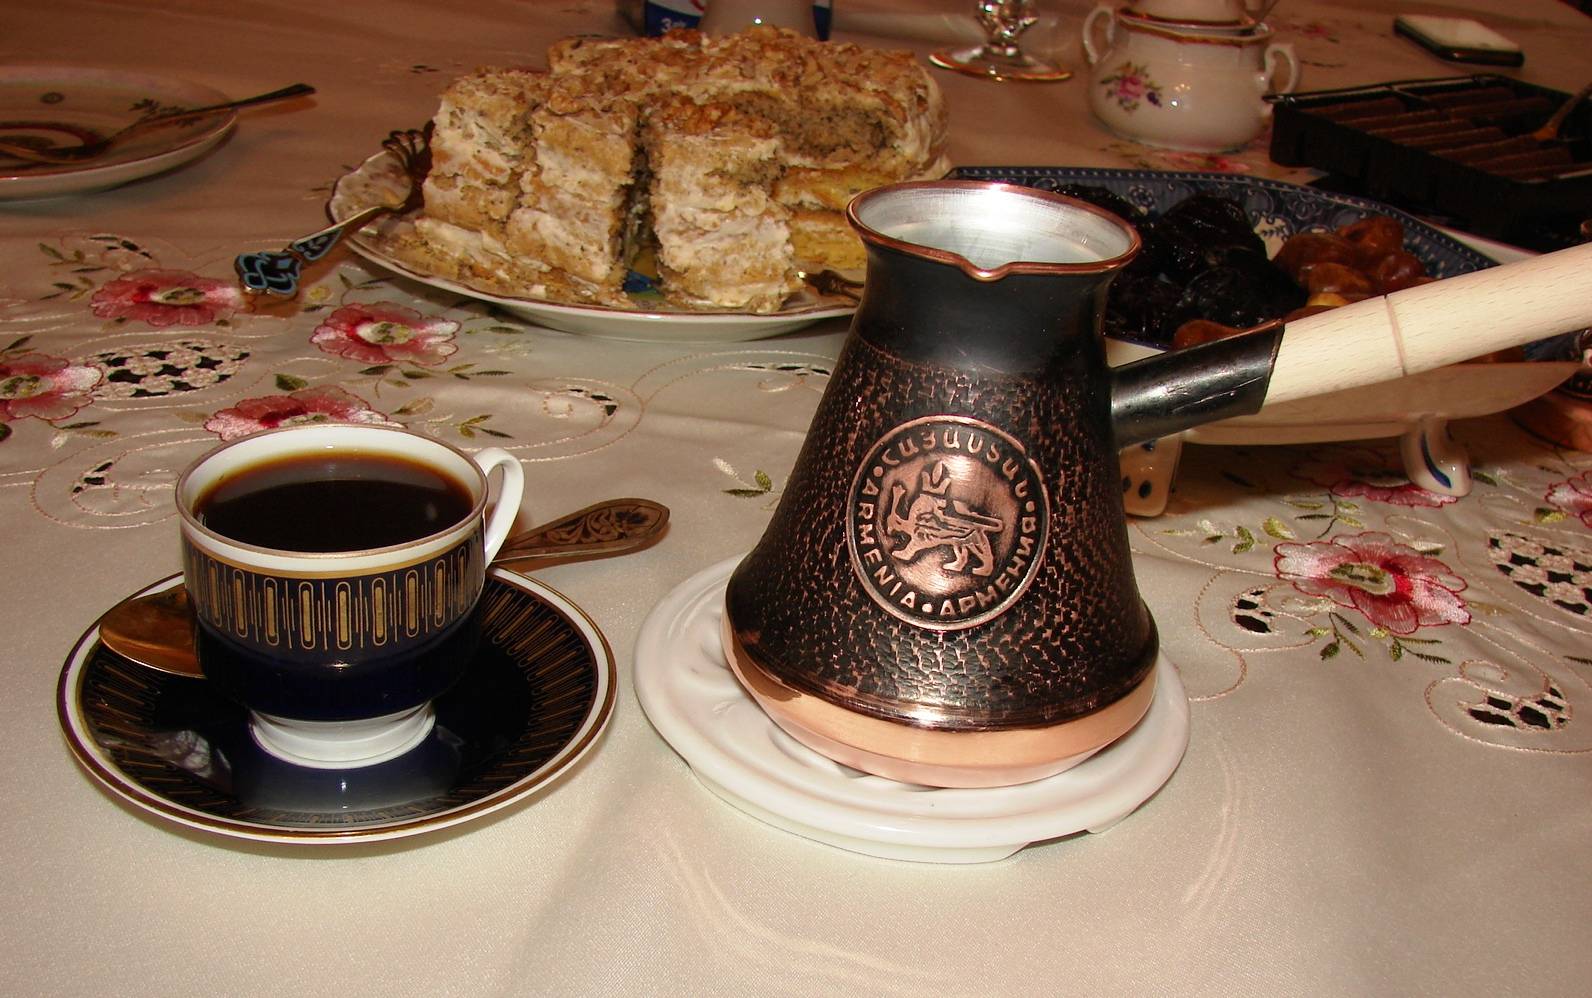 Кофе по-турецки: рецепт приготовления турецкого напитка с чесноком и медом, как варить в турке (сосуд в котором варят кофе) и как пить из турецких чашек для кофе, а также почему его подают с водой?